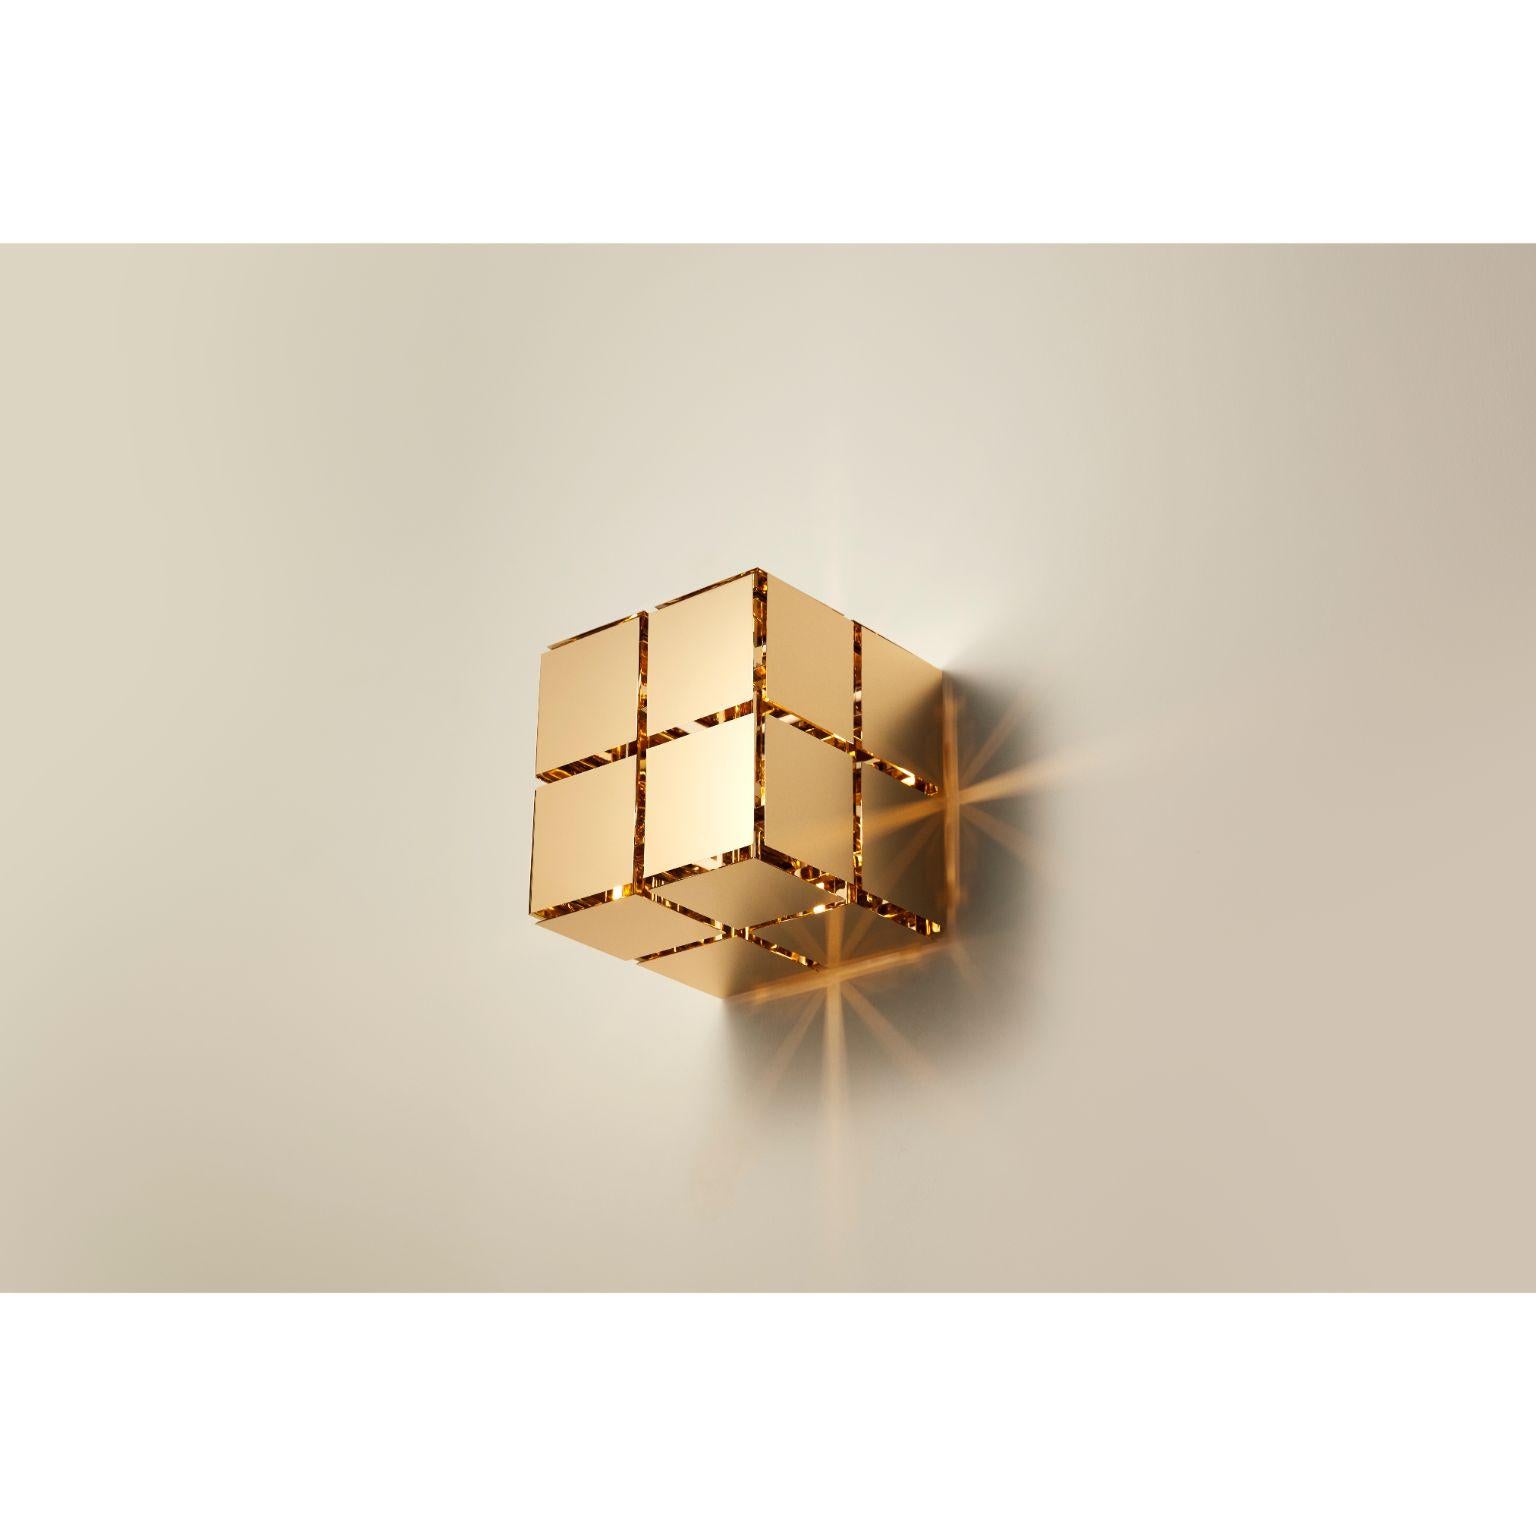 Applique Cube par Mydriaz
Dimensions : L 18 x L 18 x H 18 cm
Matériaux : Laiton
Finitions : Laiton poli doré, finition nickel blanc sur laiton poli, finition nickel noir sur laiton poli.
laiton poli

Toutes nos lampes peuvent être câblées en